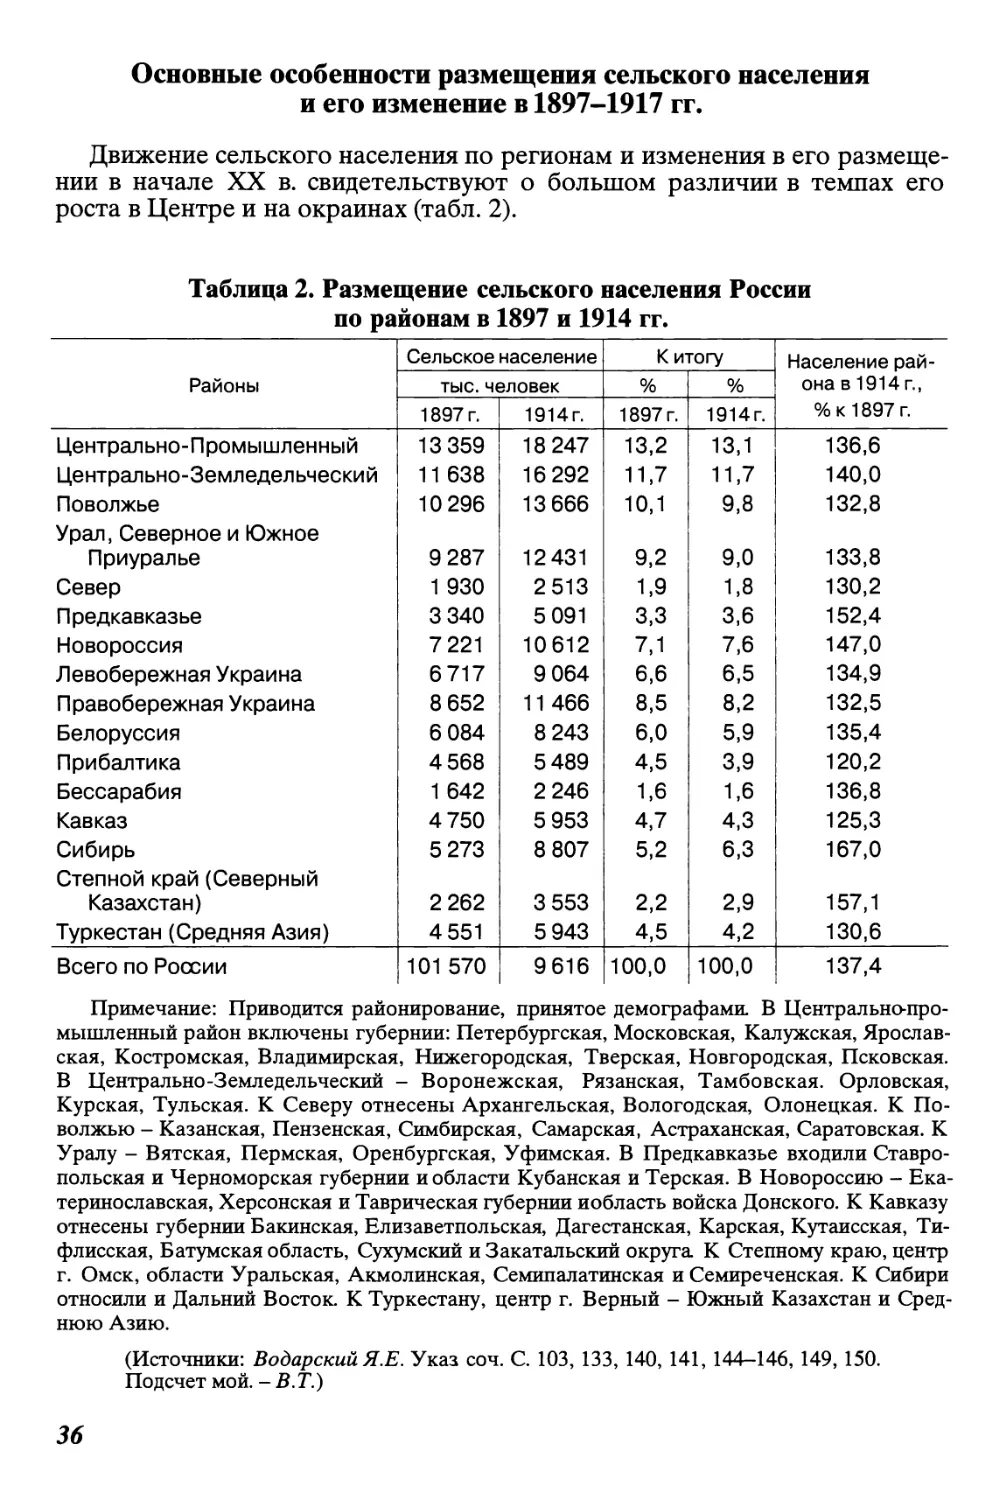 Основные особенности размещения сельского населения и его изменение в 1897-1917 гг.